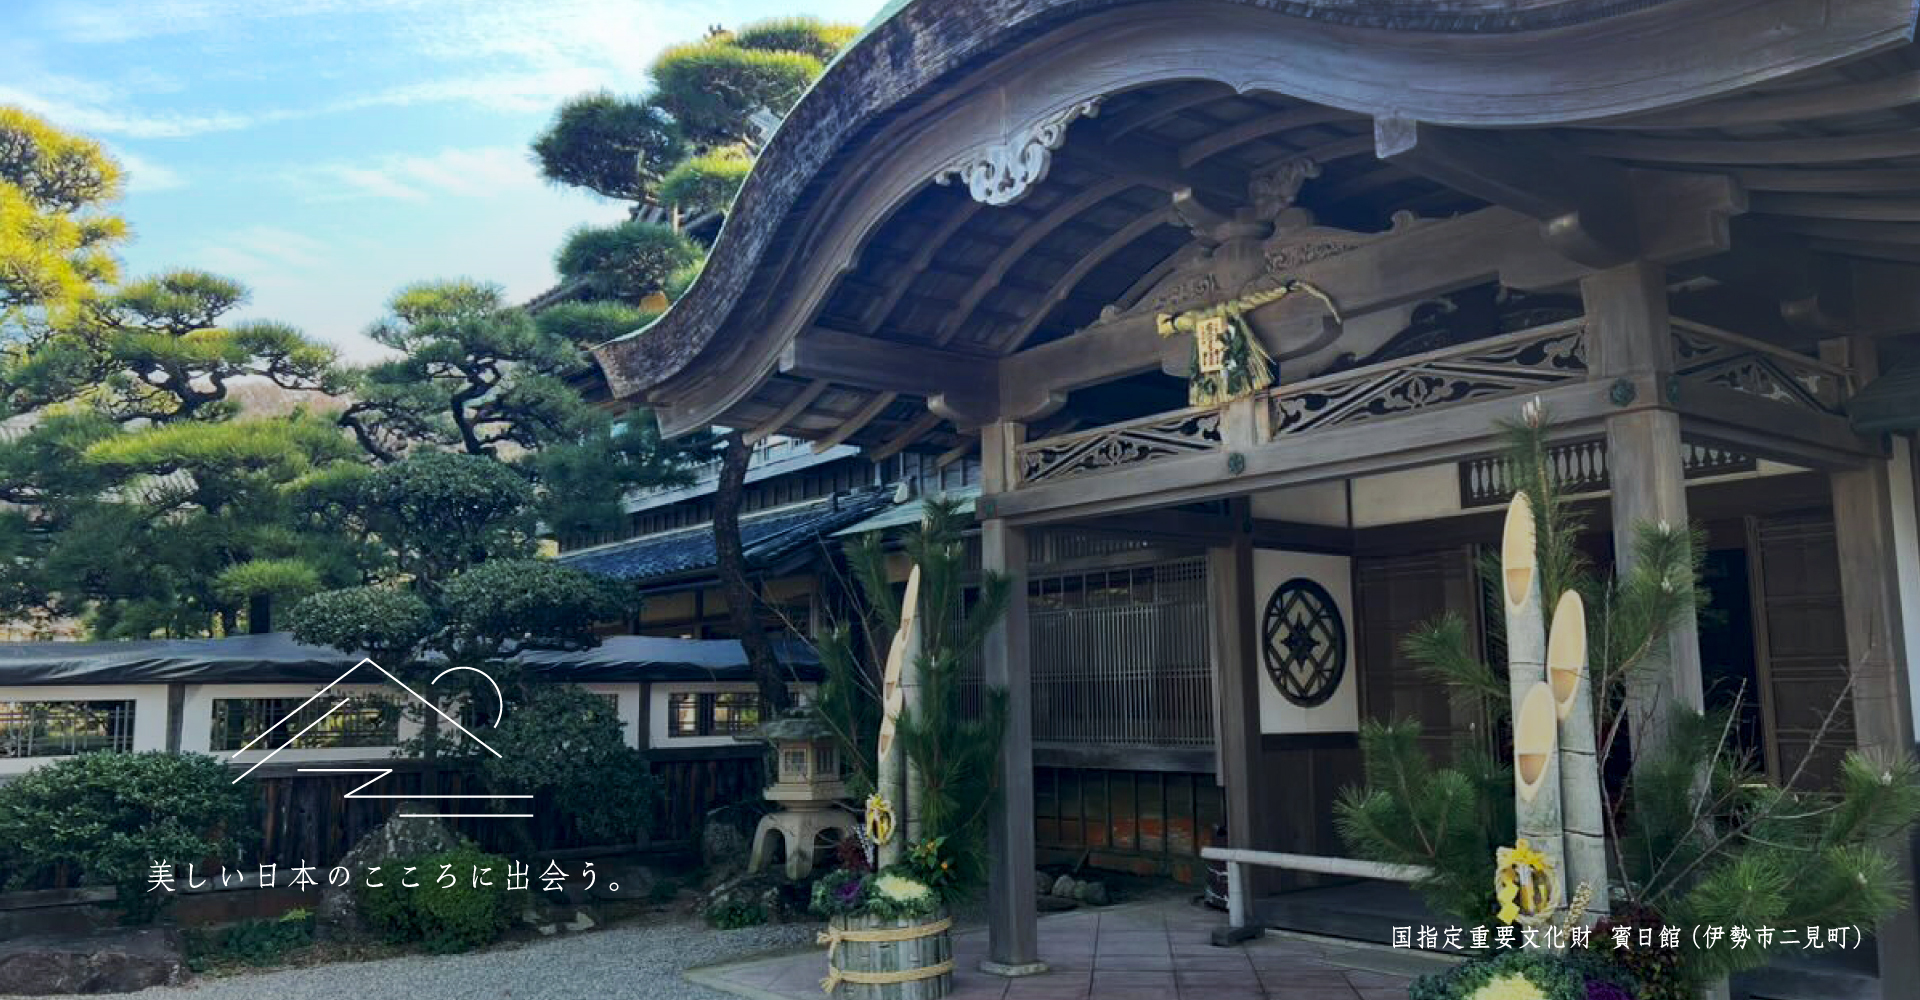 Hinichikan, importante proprietà culturale designata a livello nazionale